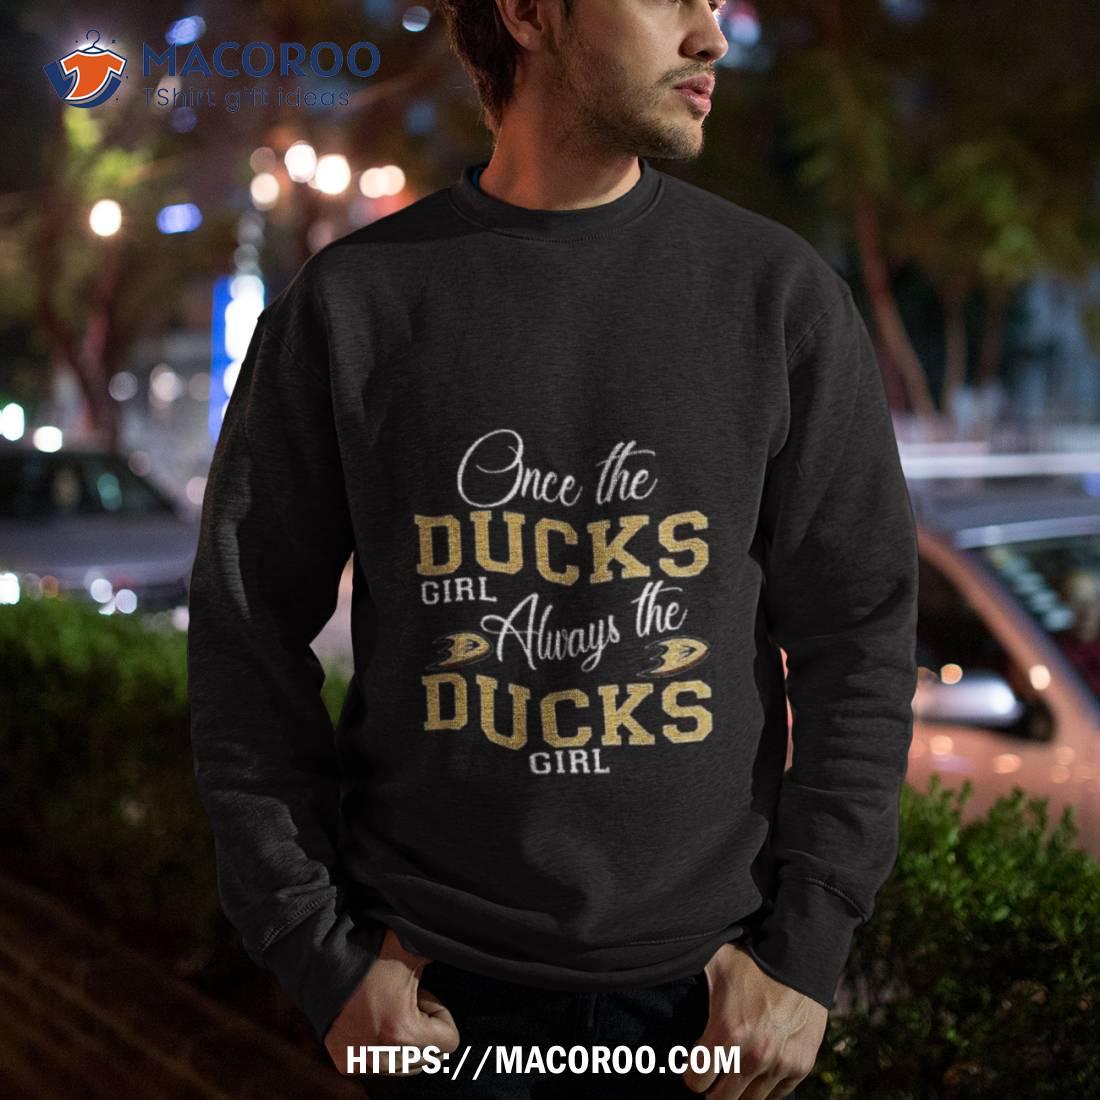 Vintage 90s Anaheim Mighty Ducks Shirt, Trendy Crewneck Unisex Hoodie